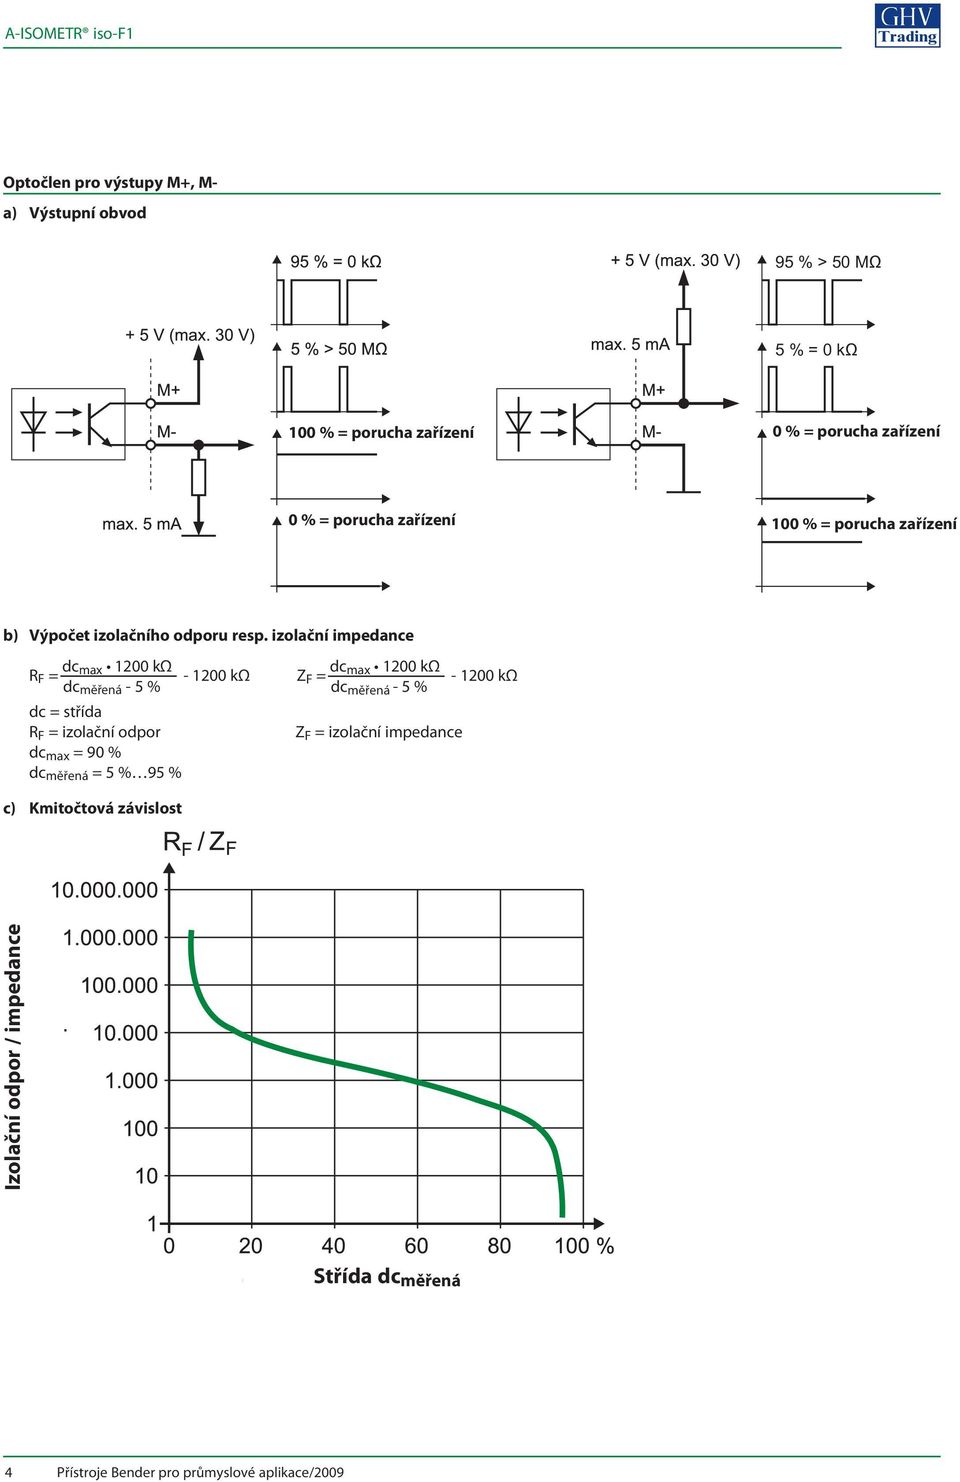 izolační impedance R F = dc max 1200 kω - 1200 kω dc měřená - 5 % dc = střída R F = izolační odpor dc max = 90 % dc měřená = 5 % 95 % Z F = dc